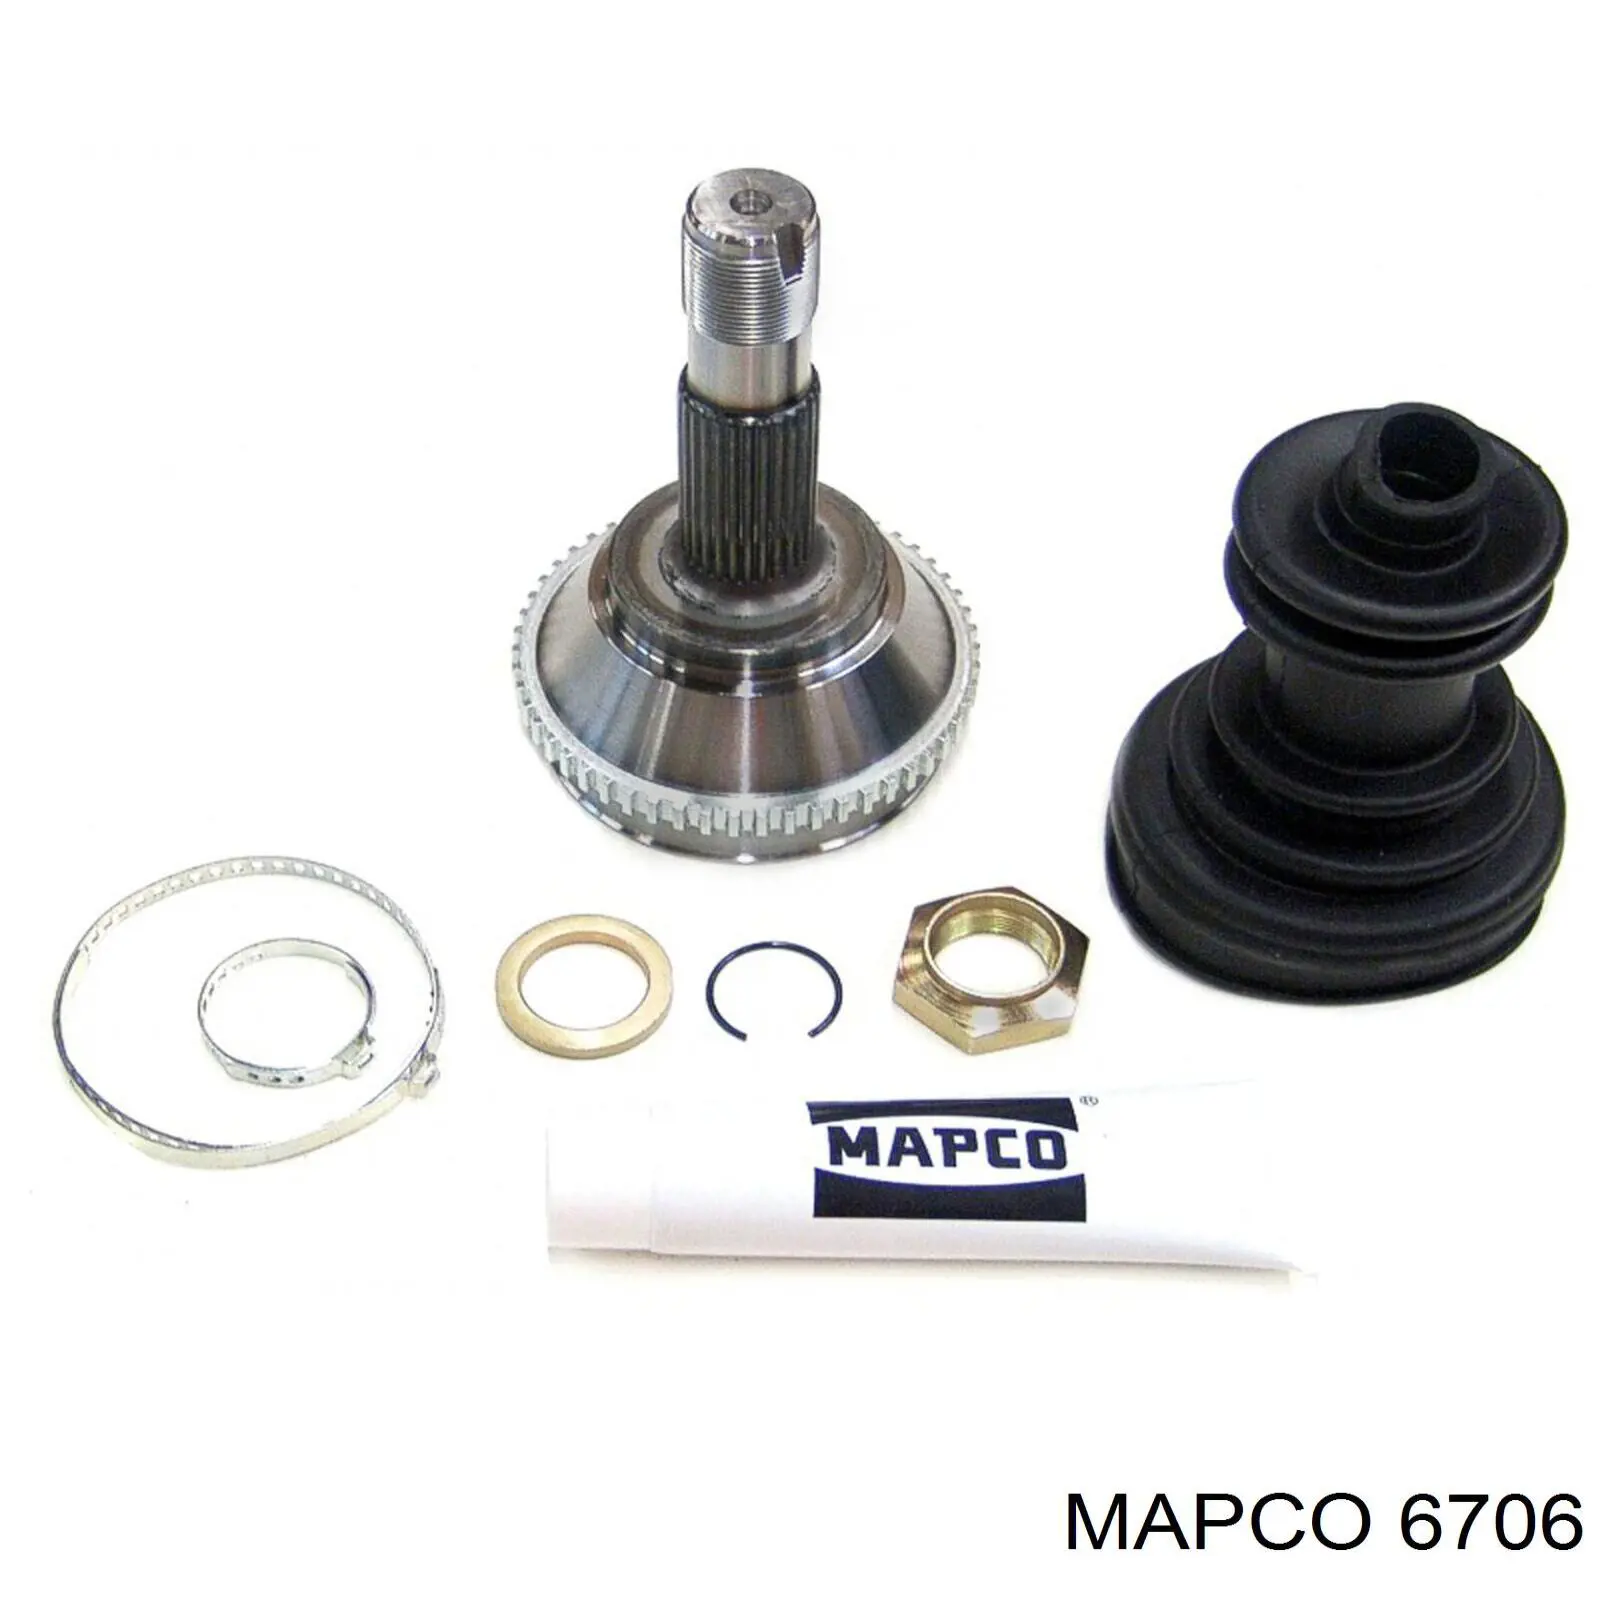 6706 Mapco колодки тормозные задние дисковые